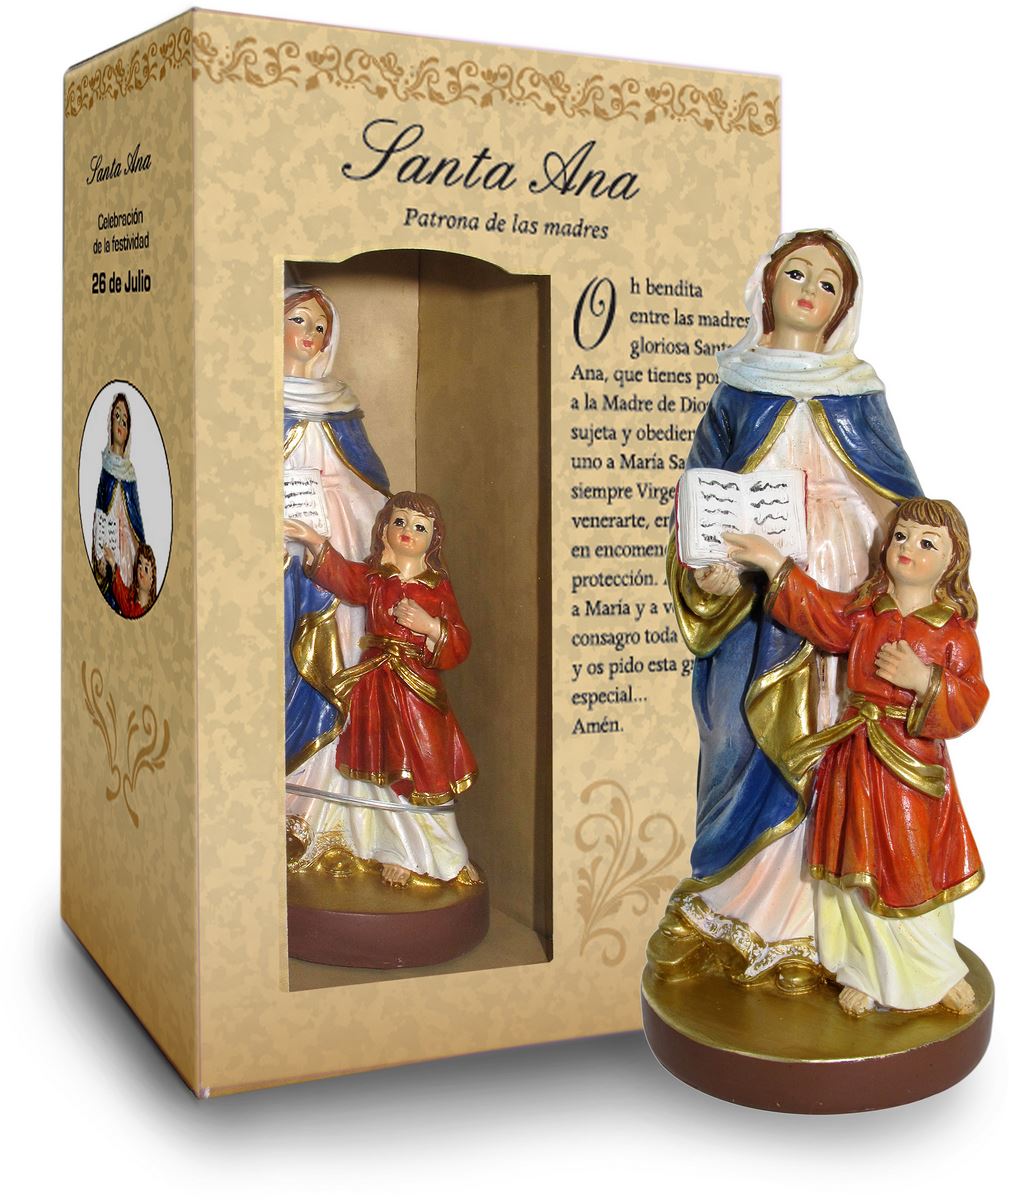 statua di sant'anna da 12 cm in confezione regalo con segnalibro in versione spagnolo